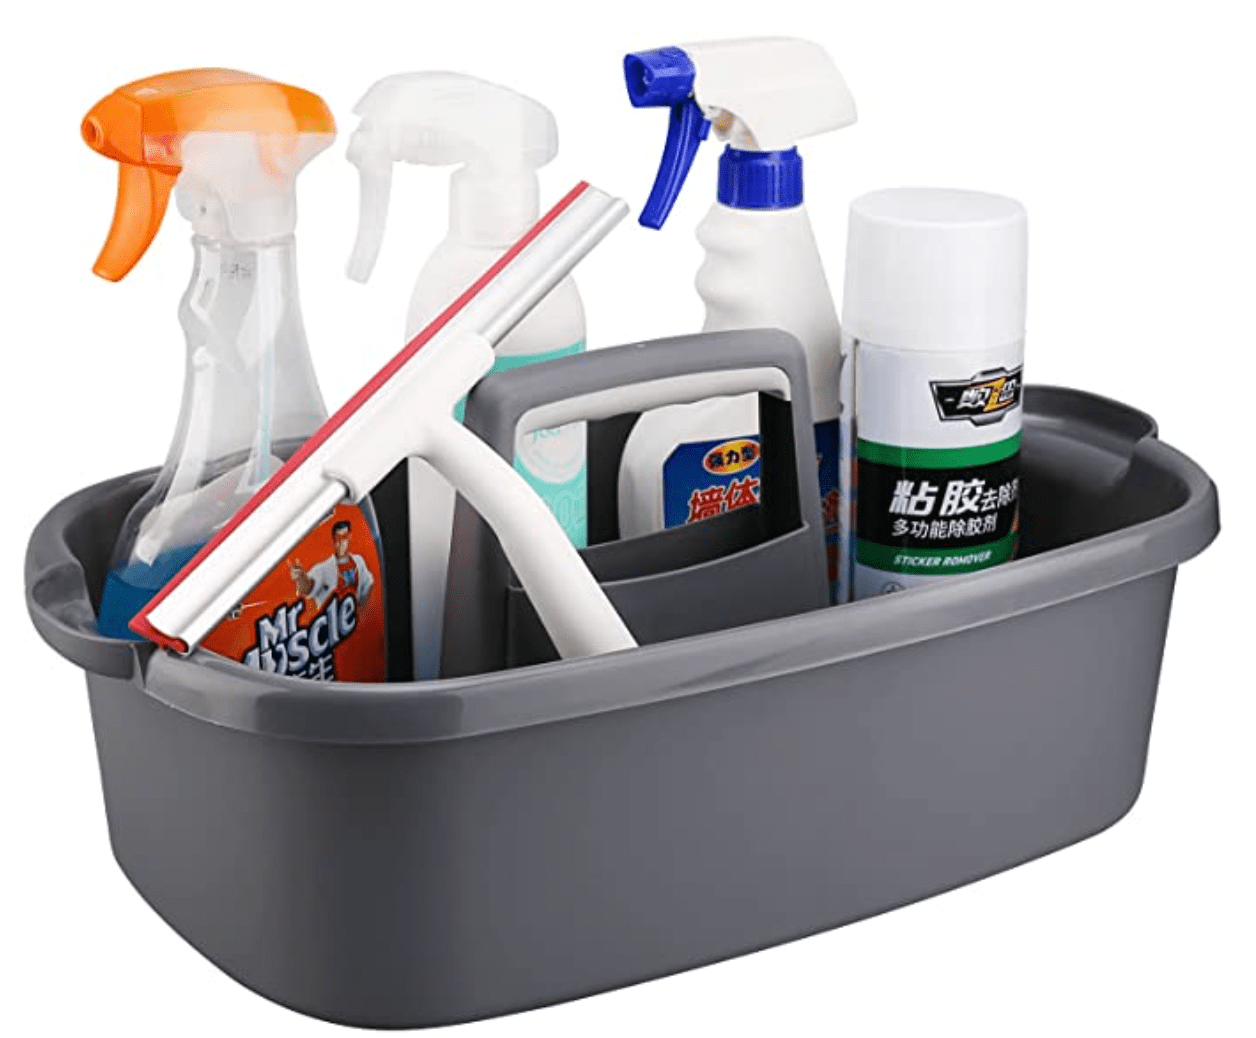 20 best cleaning supplies organizers under $35